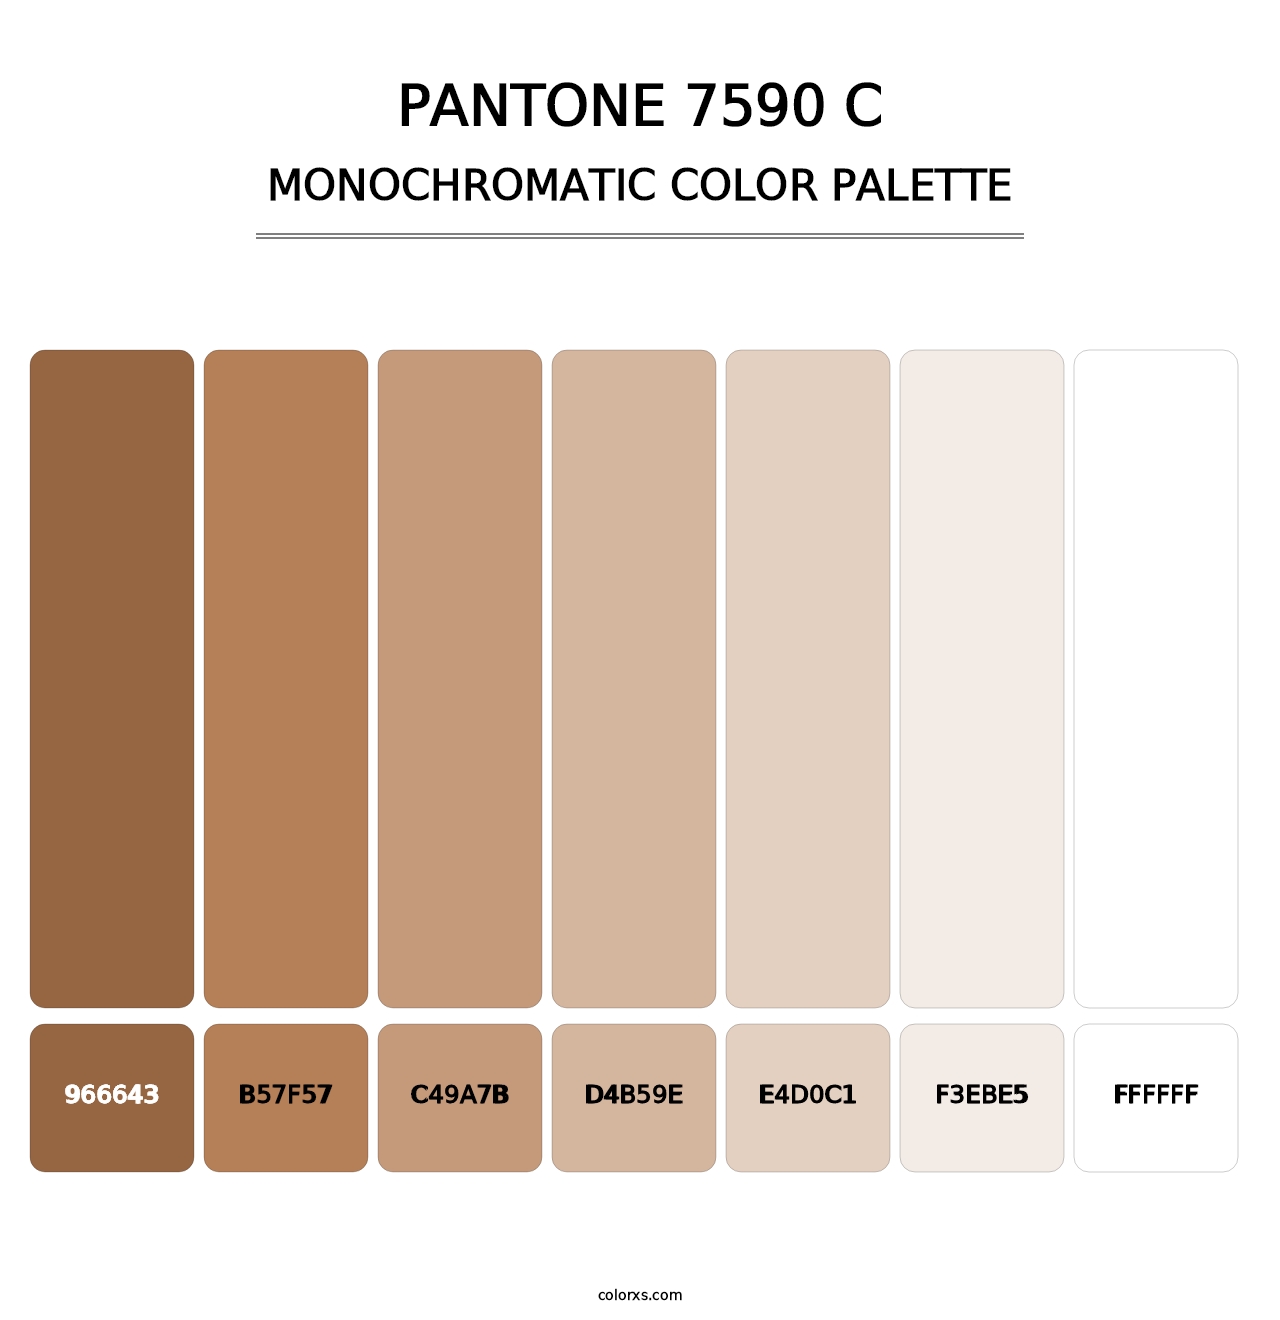 PANTONE 7590 C - Monochromatic Color Palette